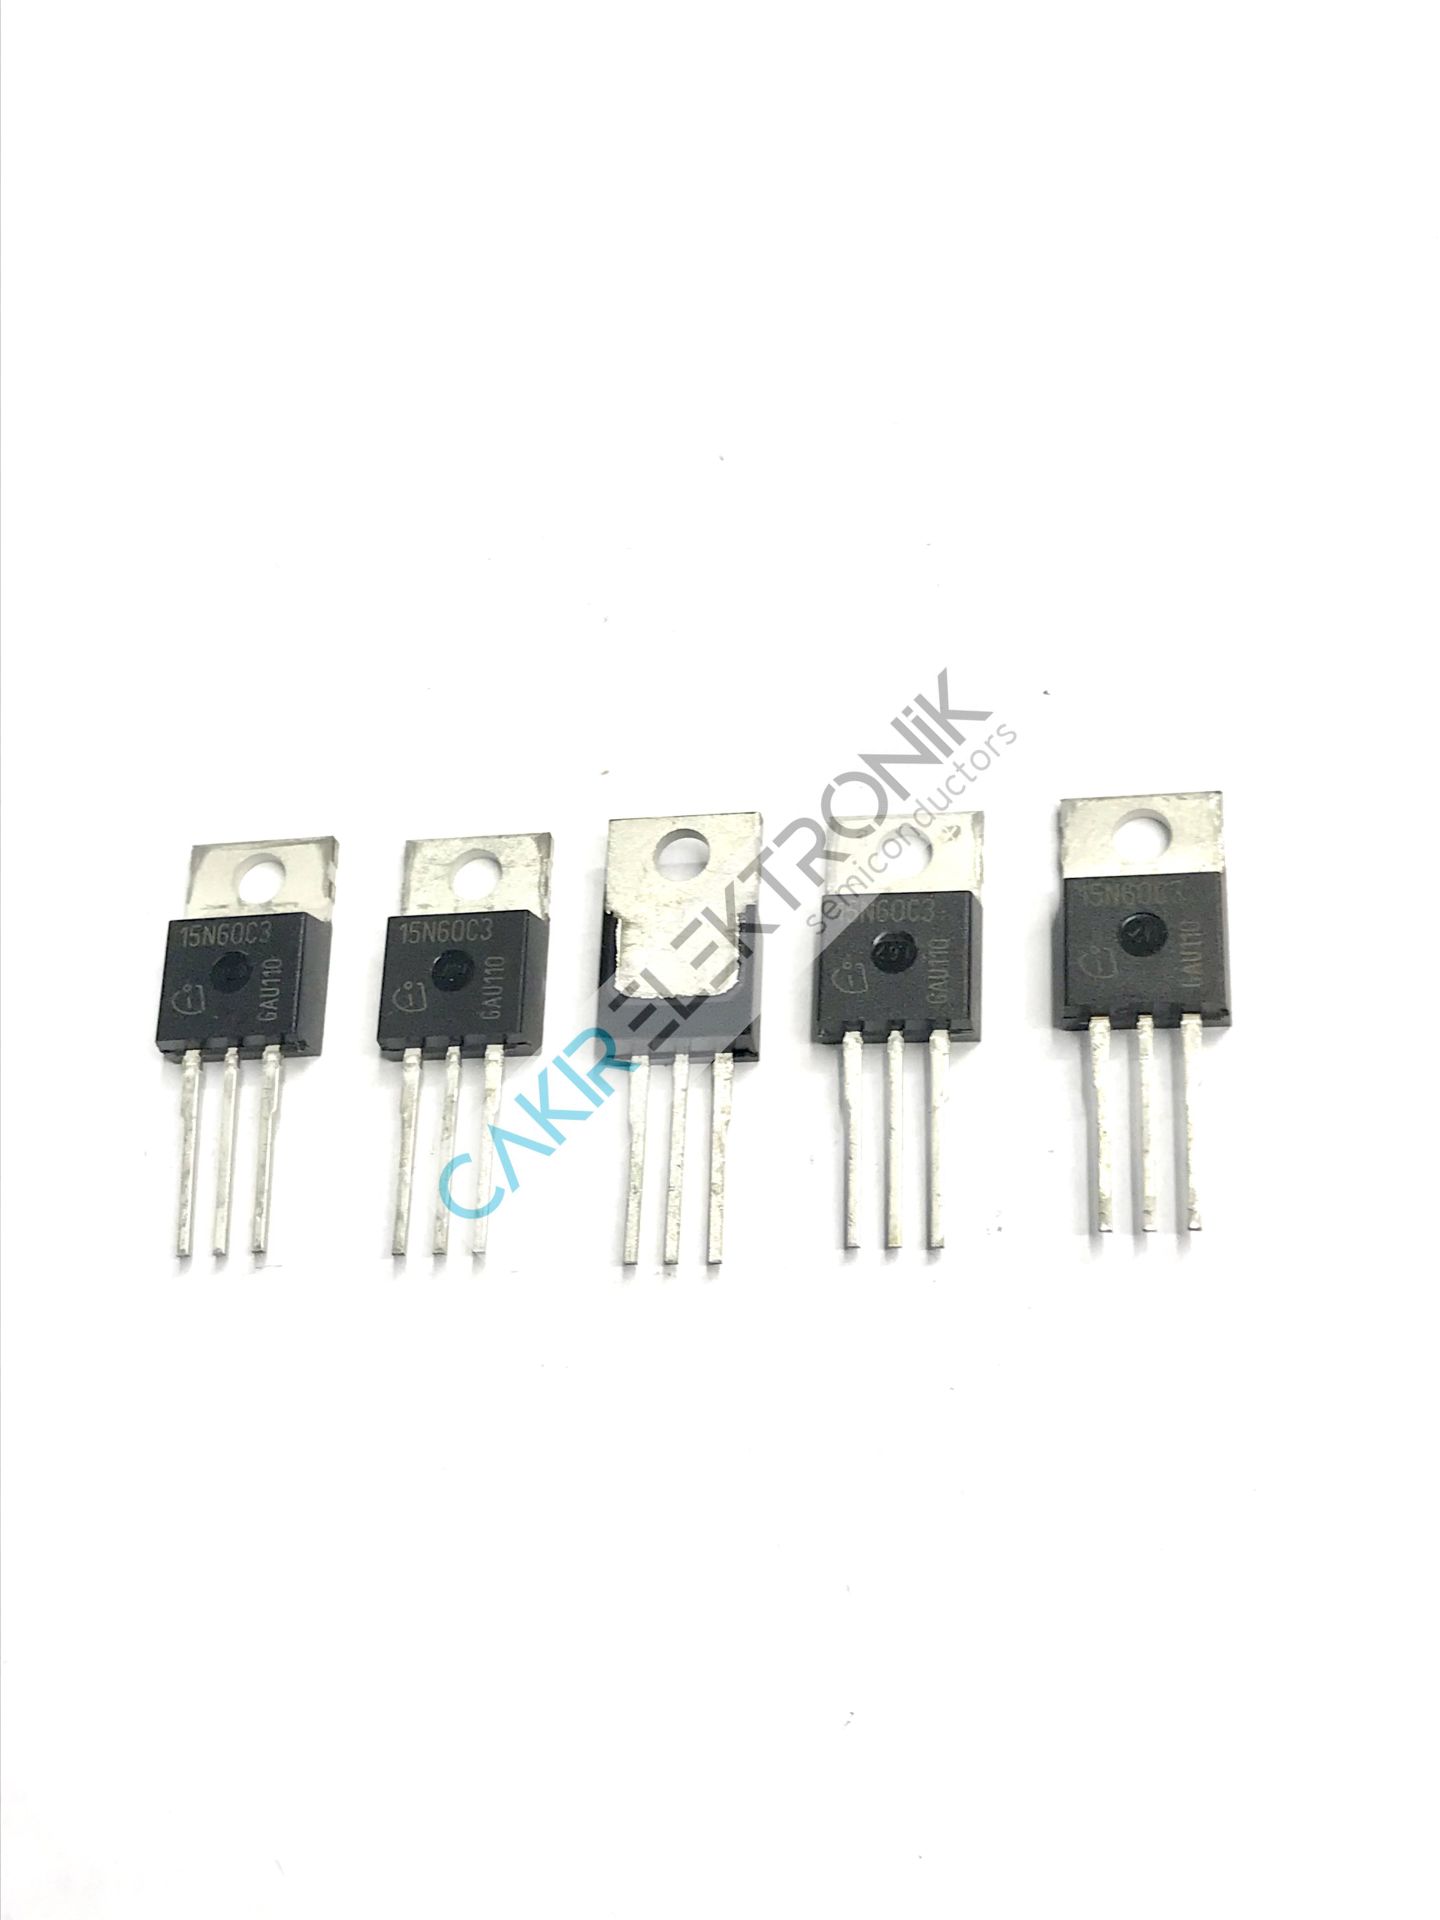 SPP15N60C3 - 15N60C3- 15N60 Cool MOS™Power Transistor